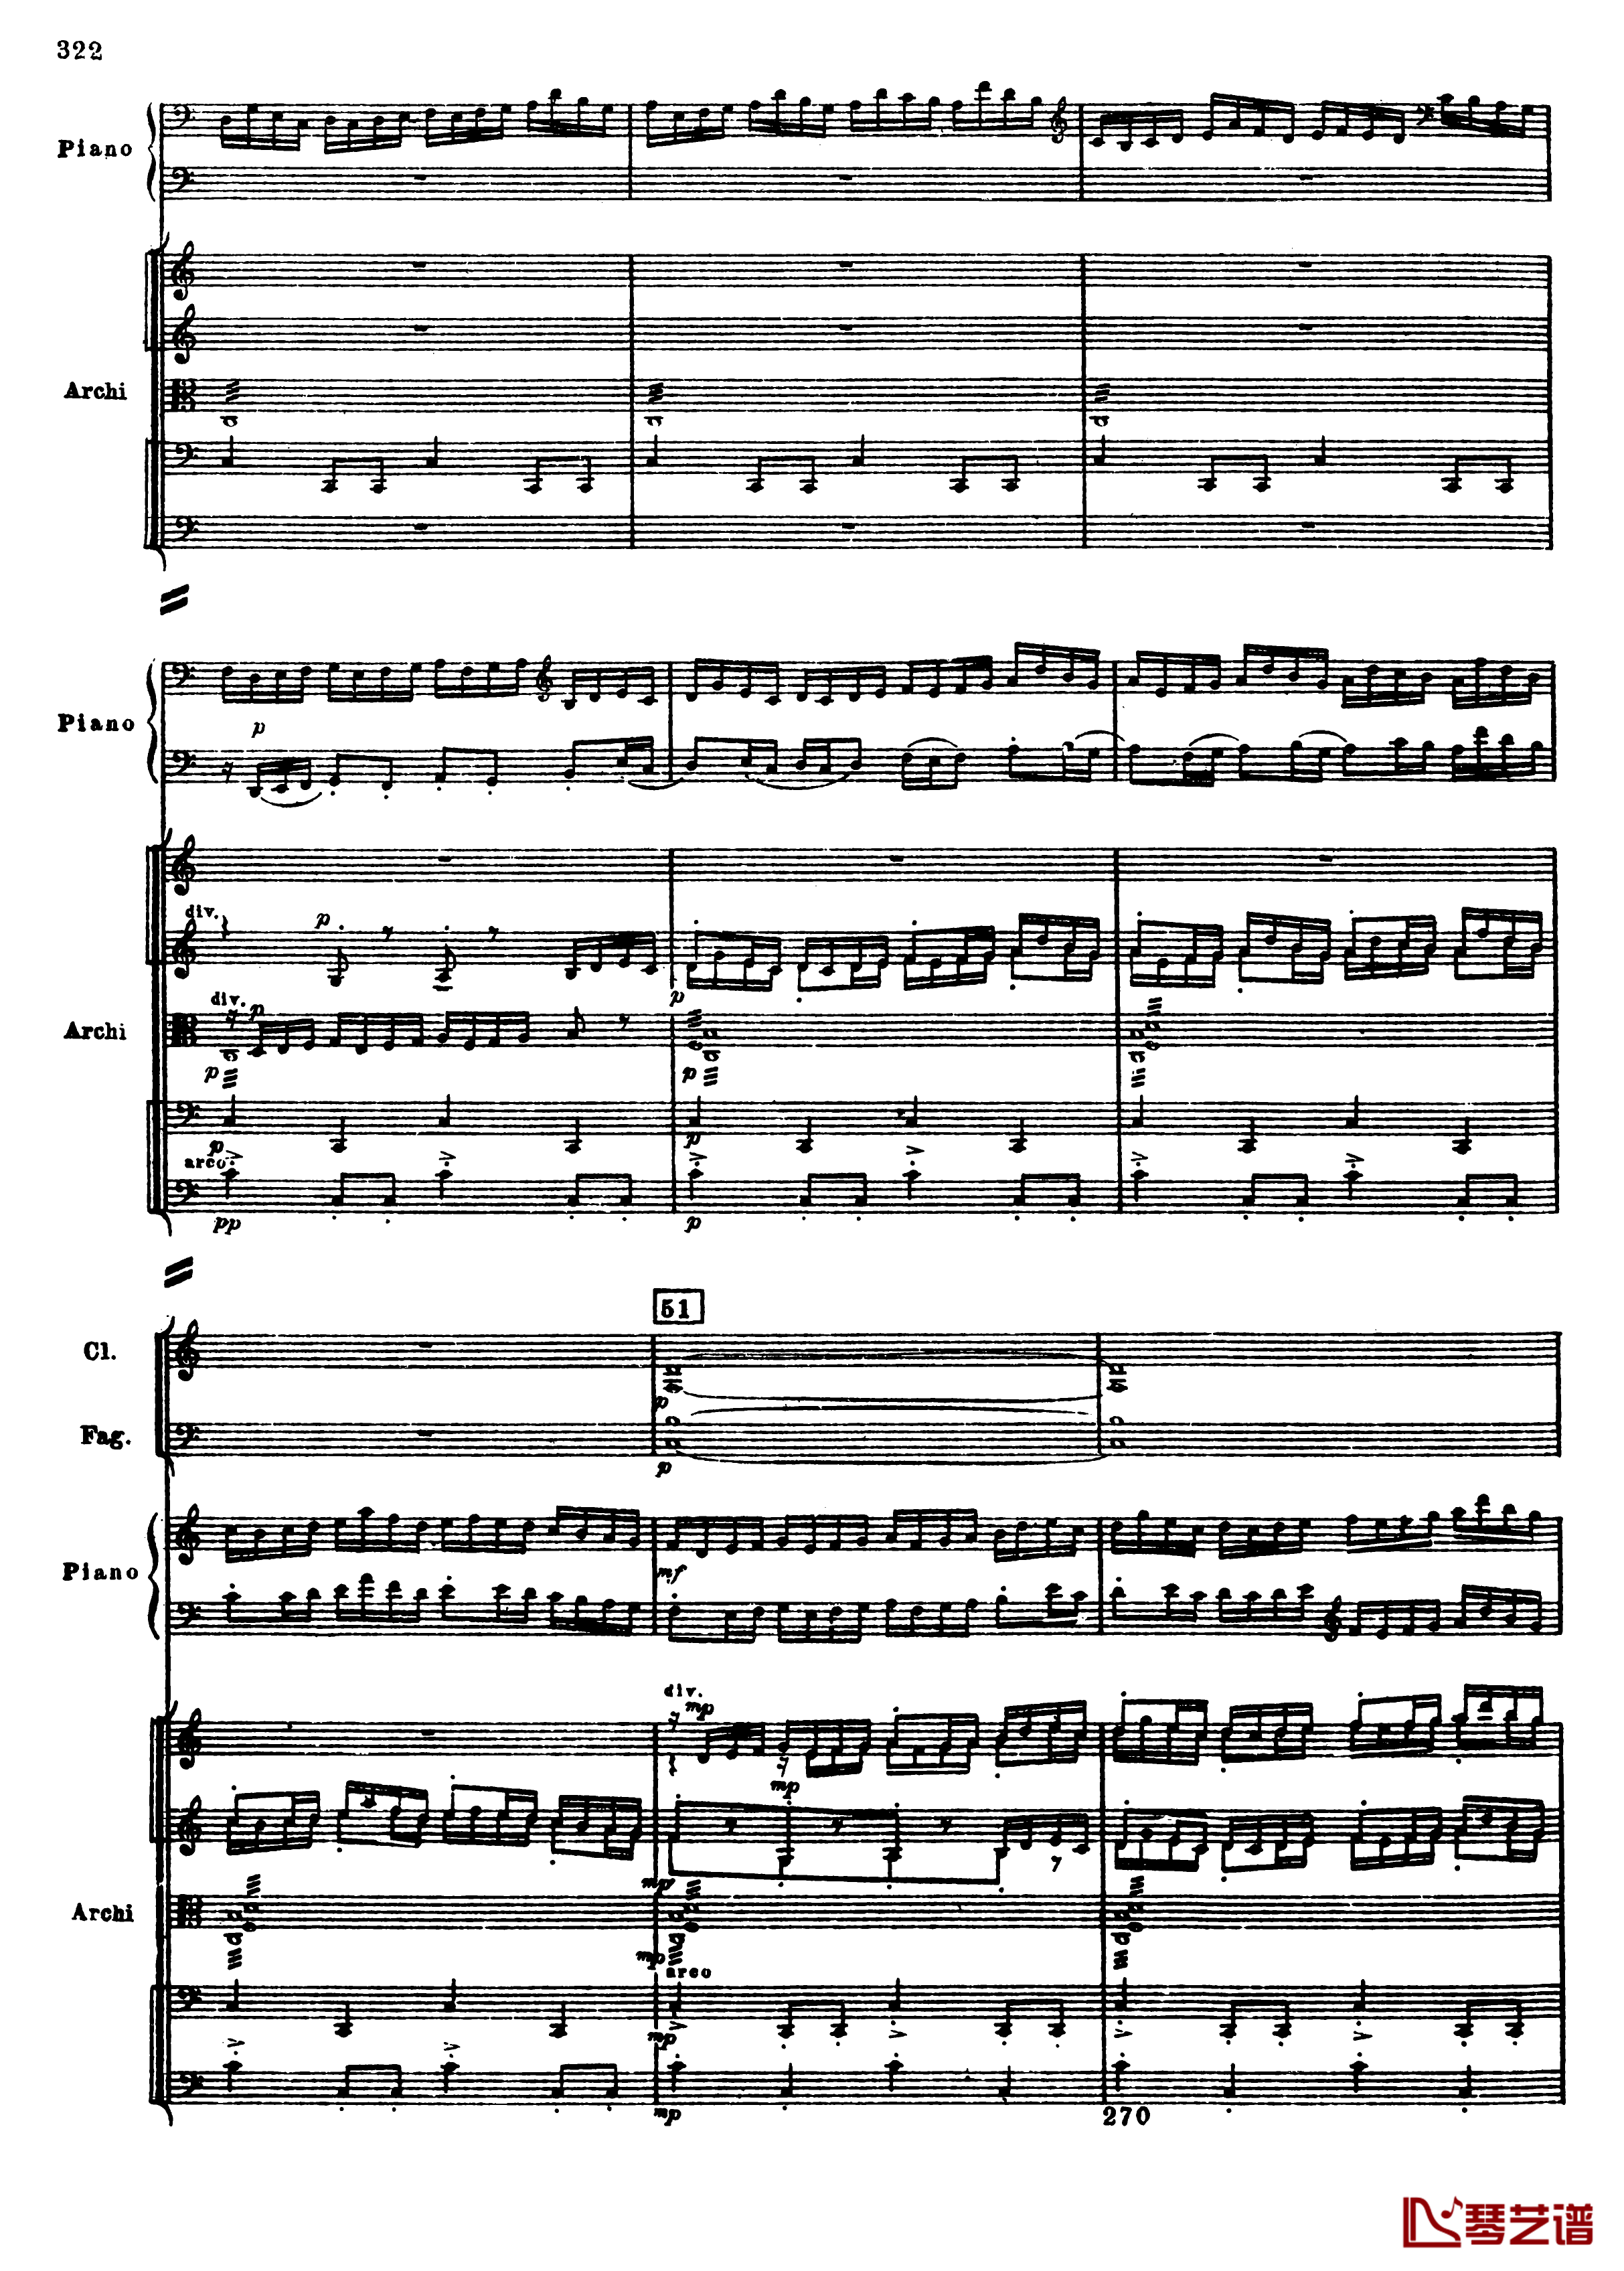 普罗科菲耶夫第三钢琴协奏曲钢琴谱-总谱-普罗科非耶夫54